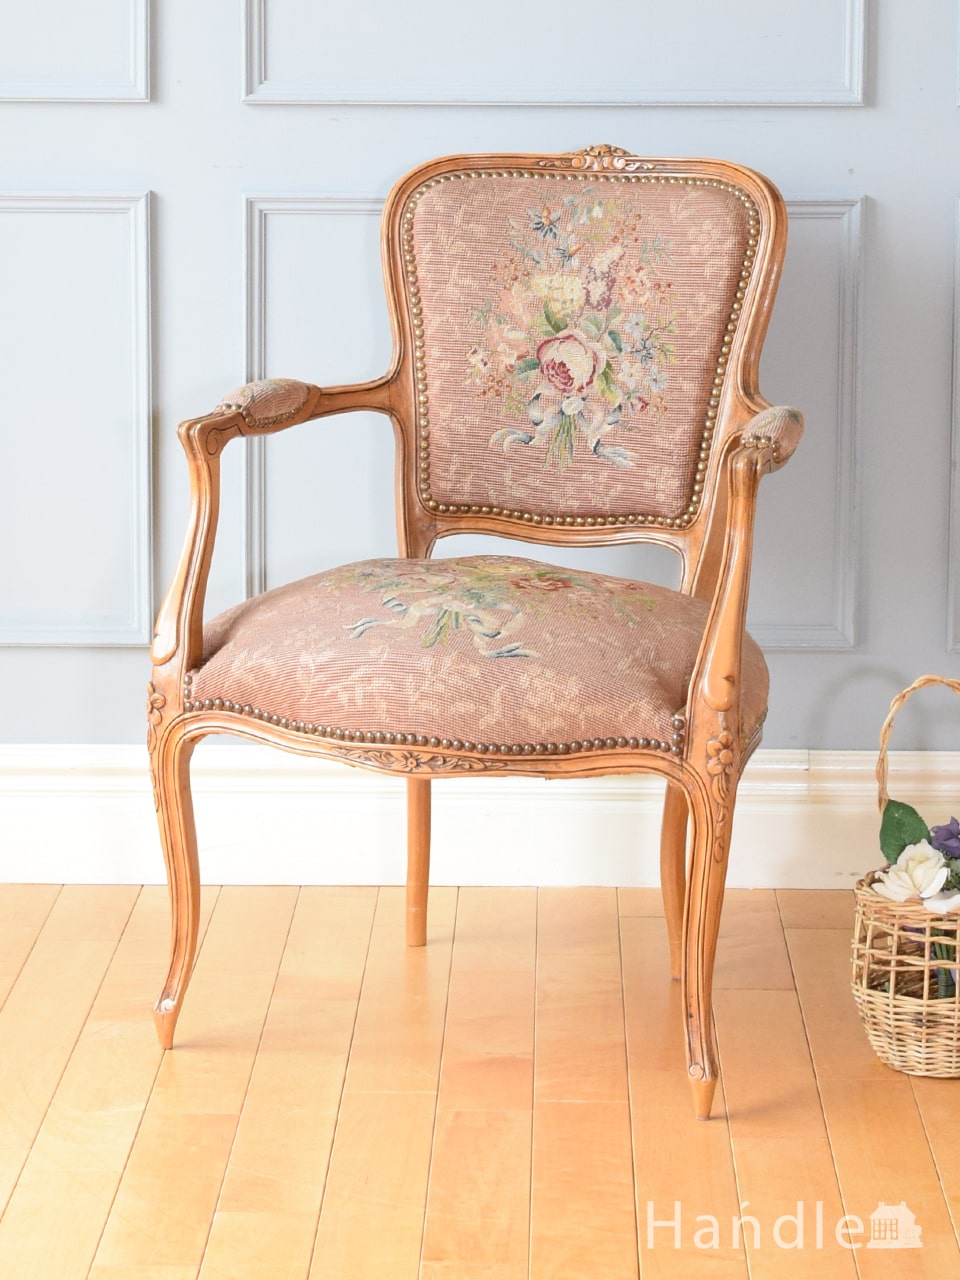 フランスアンティークのおしゃれな一人掛け椅子、お花の刺繍が華やかな